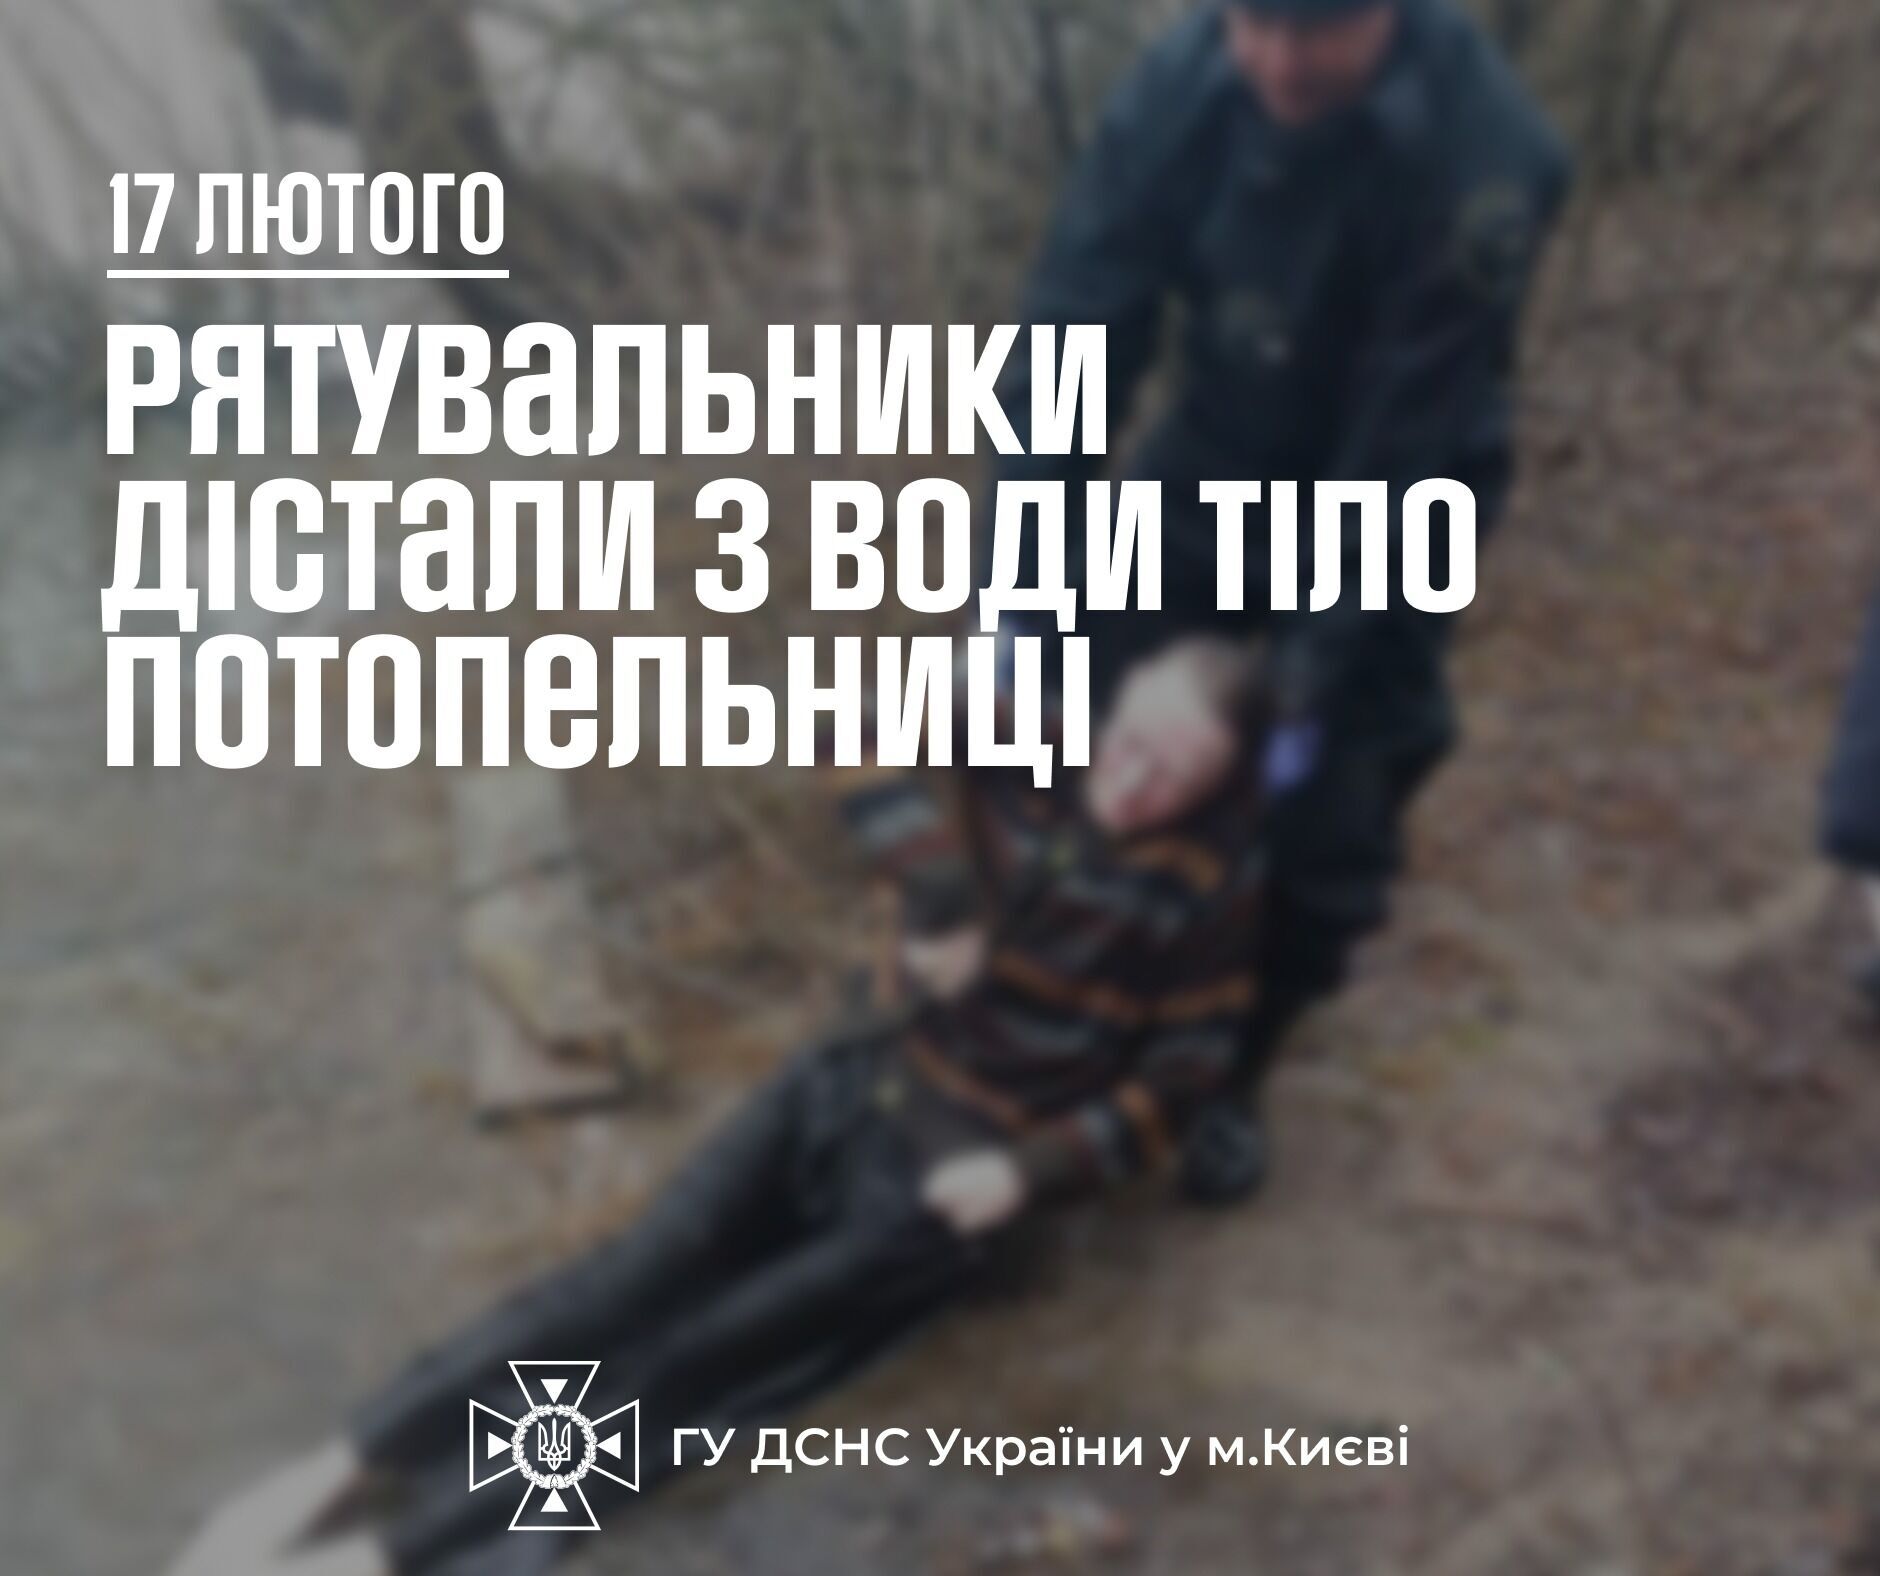 В Киеве обнаружили тело женщины в Днепре: подробности трагедии